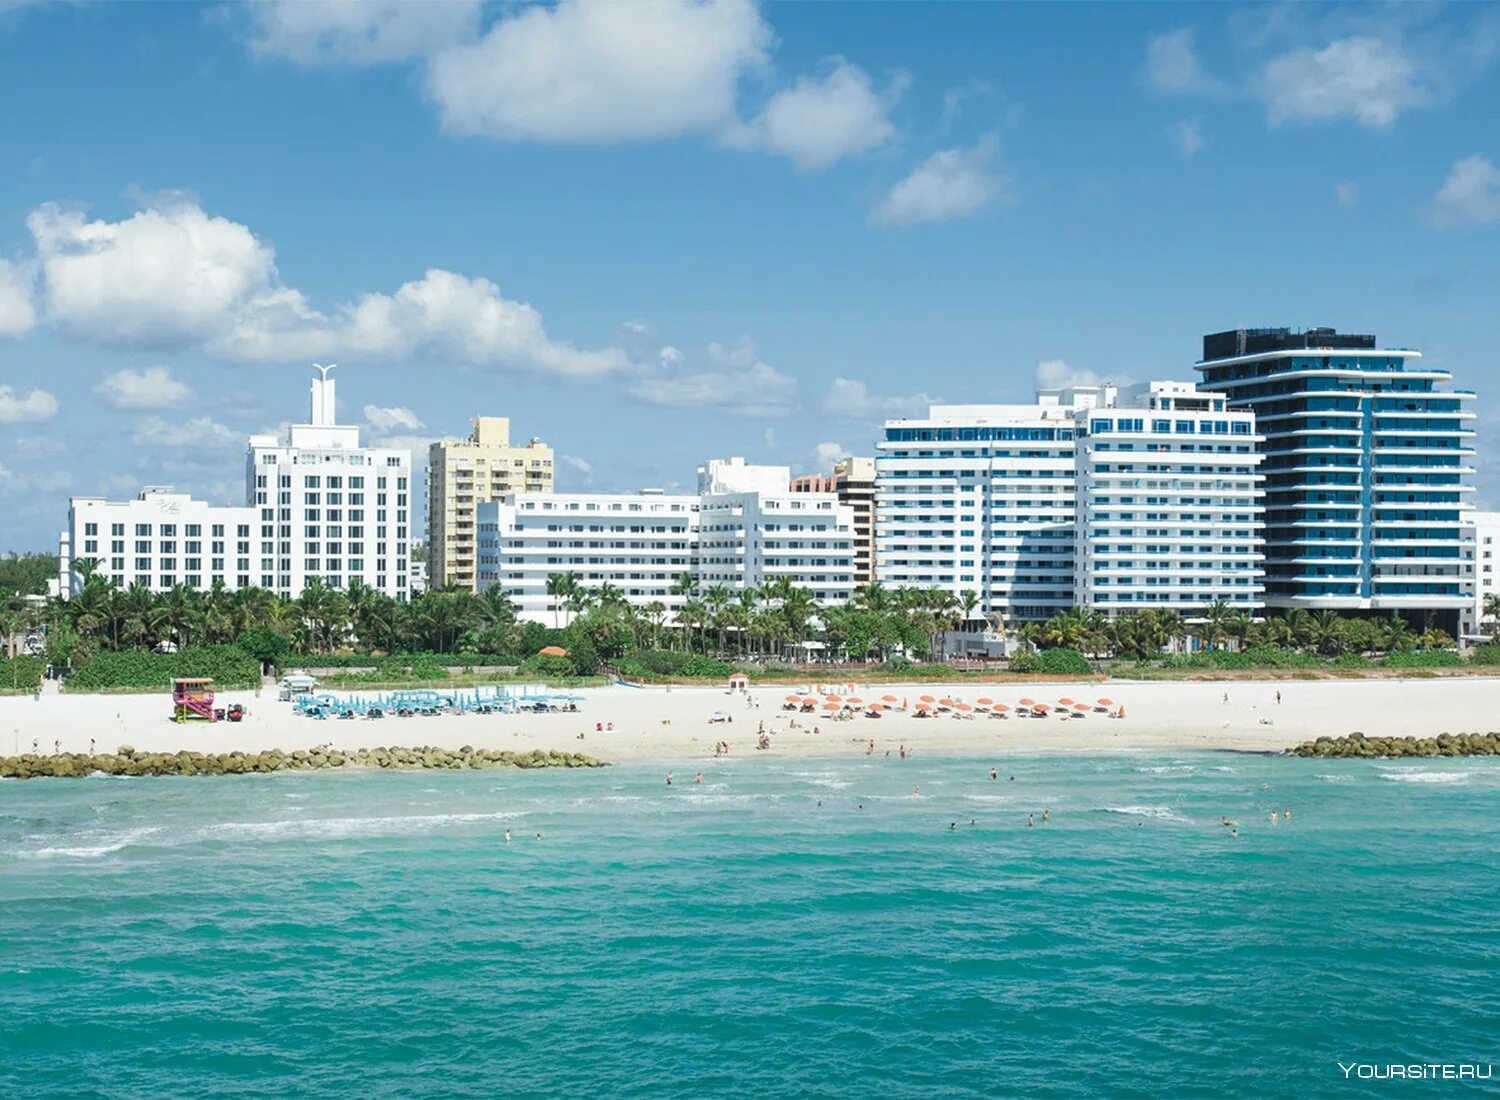 Купить путевку в маями. Отель Риу Майами-Бич. Майами Бич пляж. Майами Бич Новосибирск. Майами Флорида побережье.